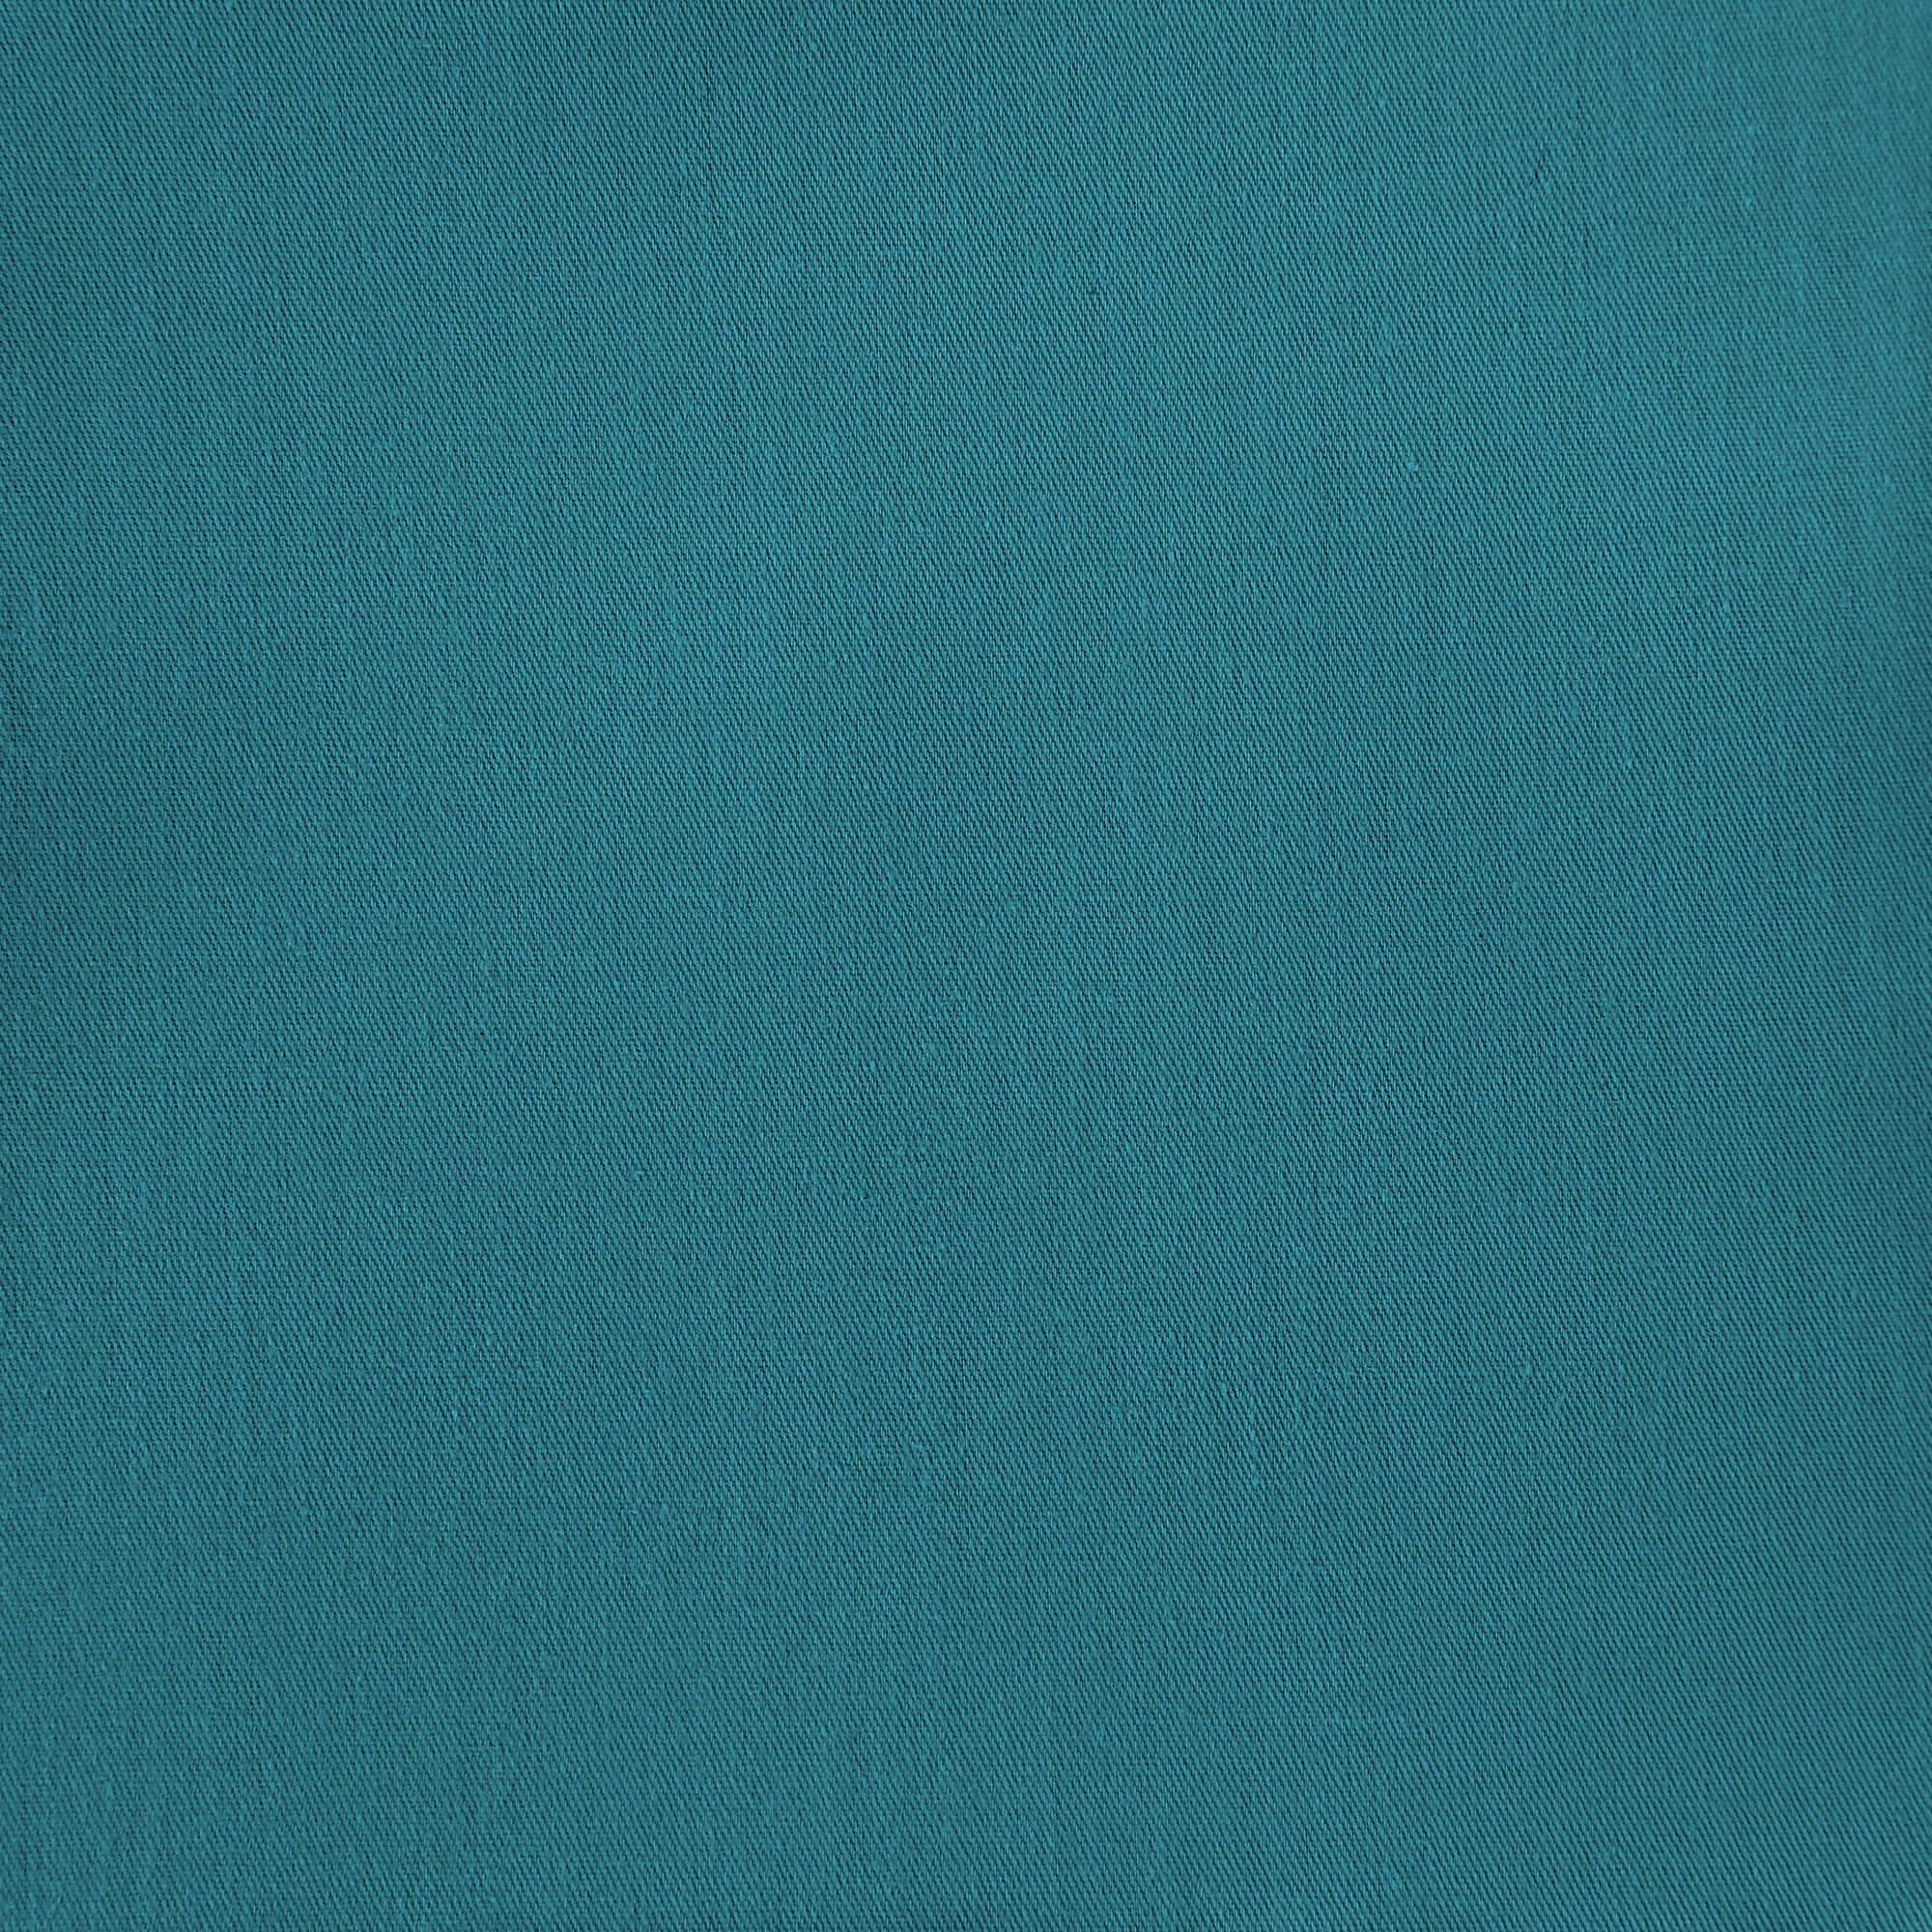 Простыня Mona Liza 215х240 сатин, цвет салатовый - фото 3